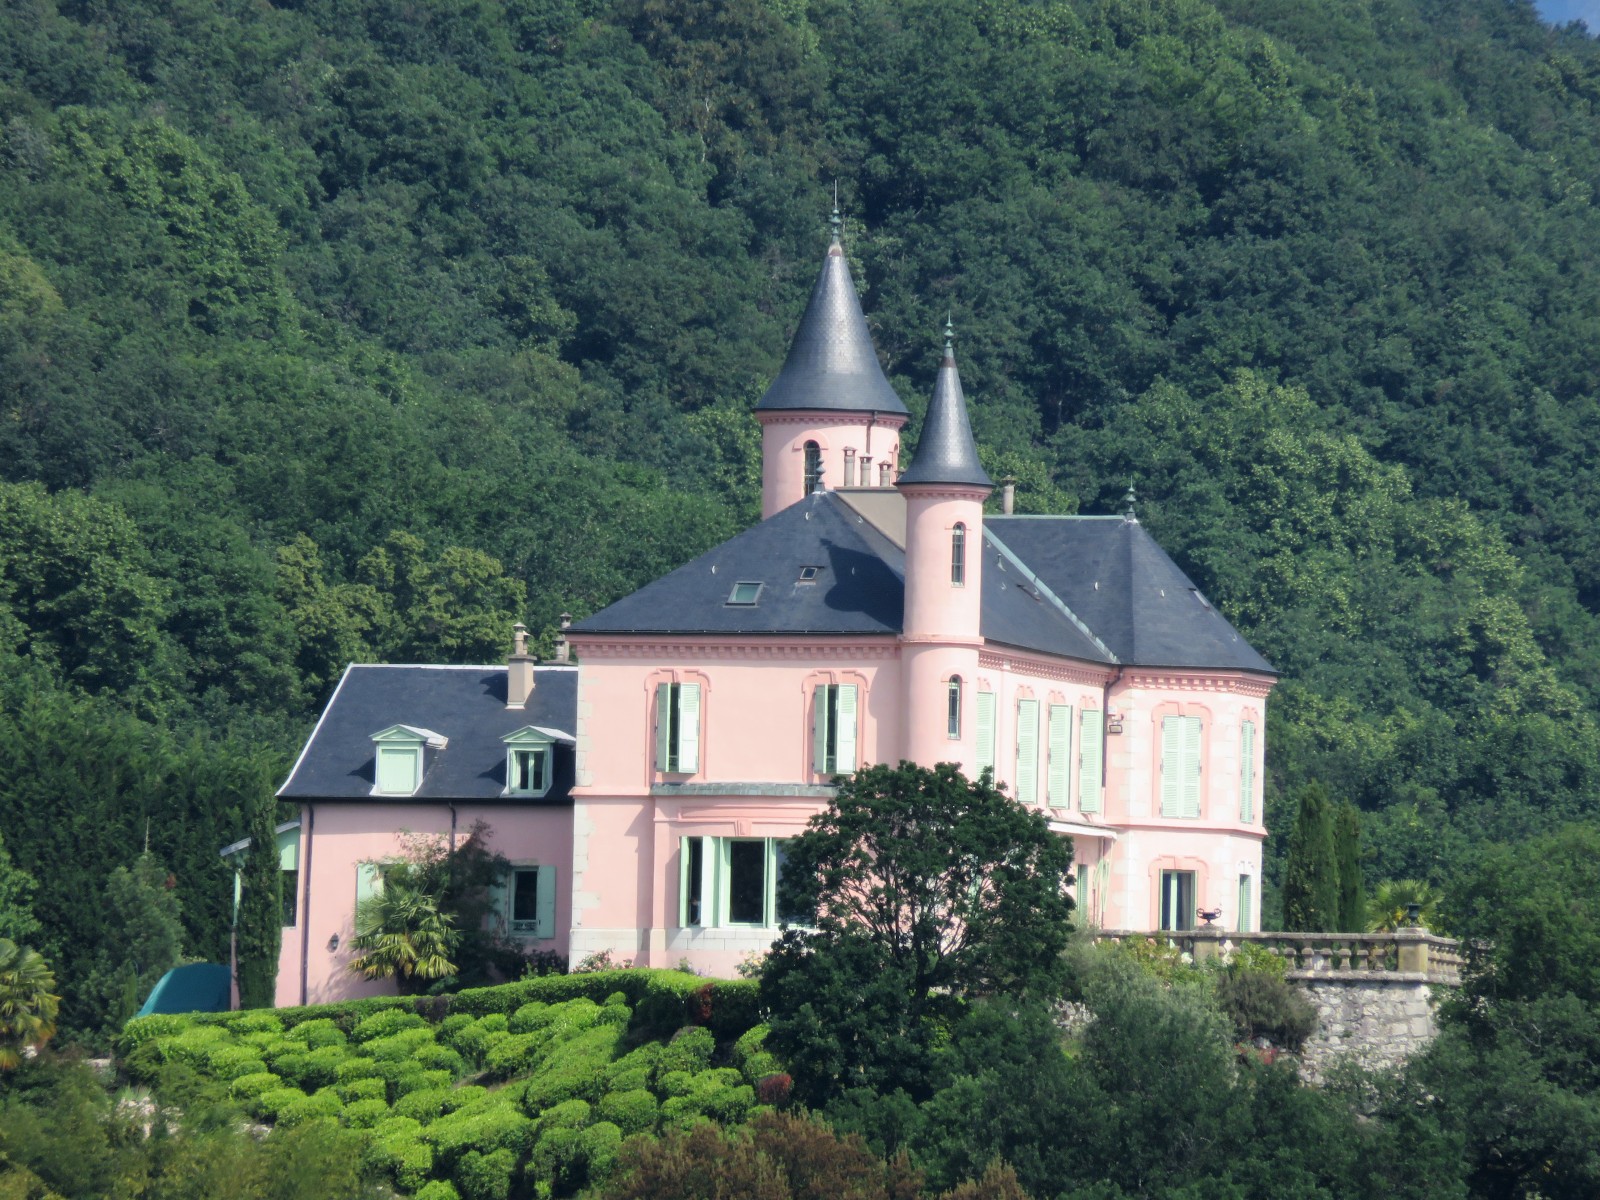 Le château rose de Saint Gilles